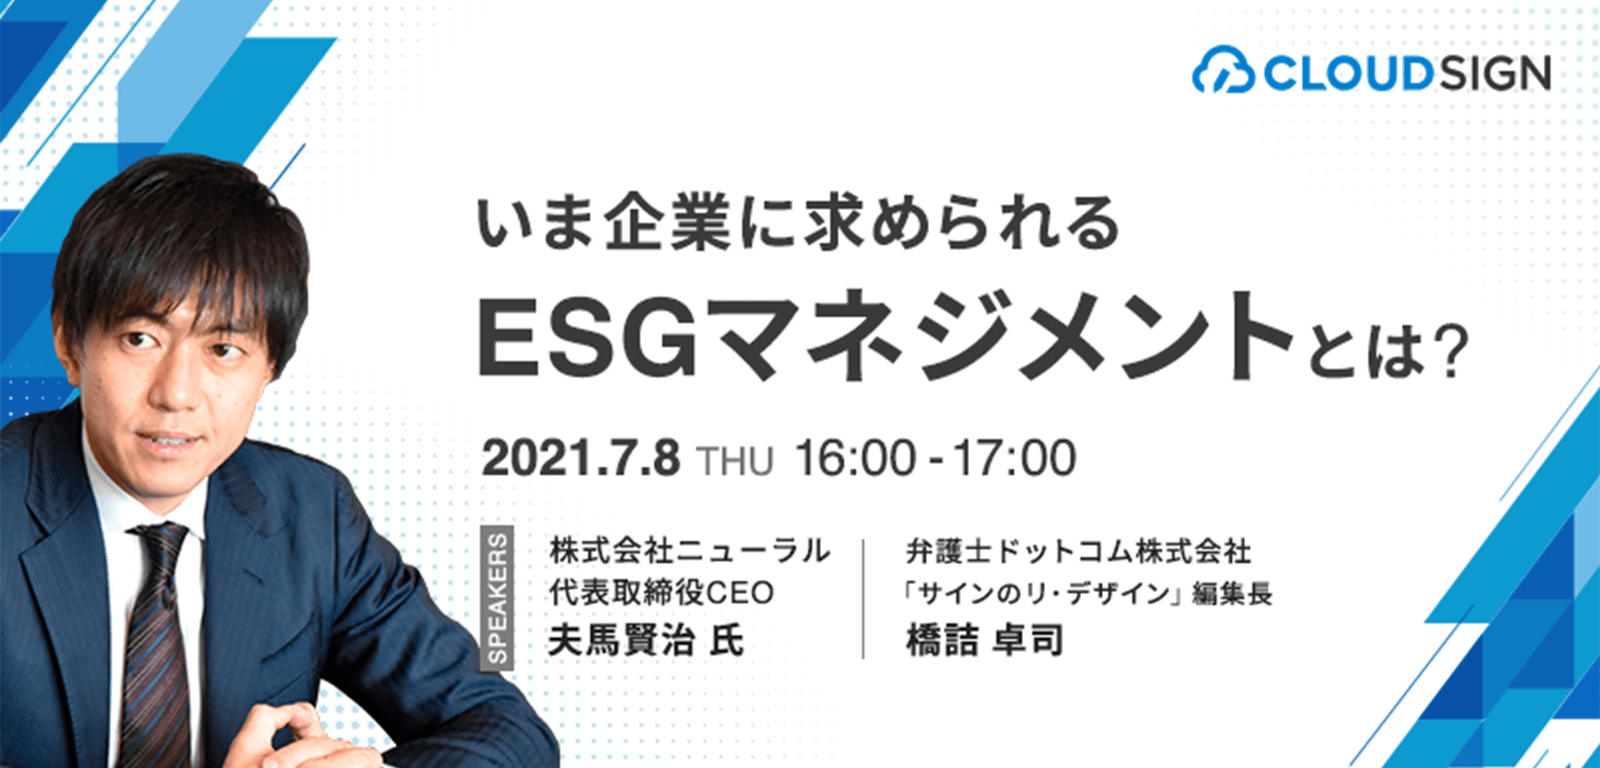 ESGの第一人者をお招きする無料オンラインセミナー「いま企業に求められるESGマネジメントとは？」を開催